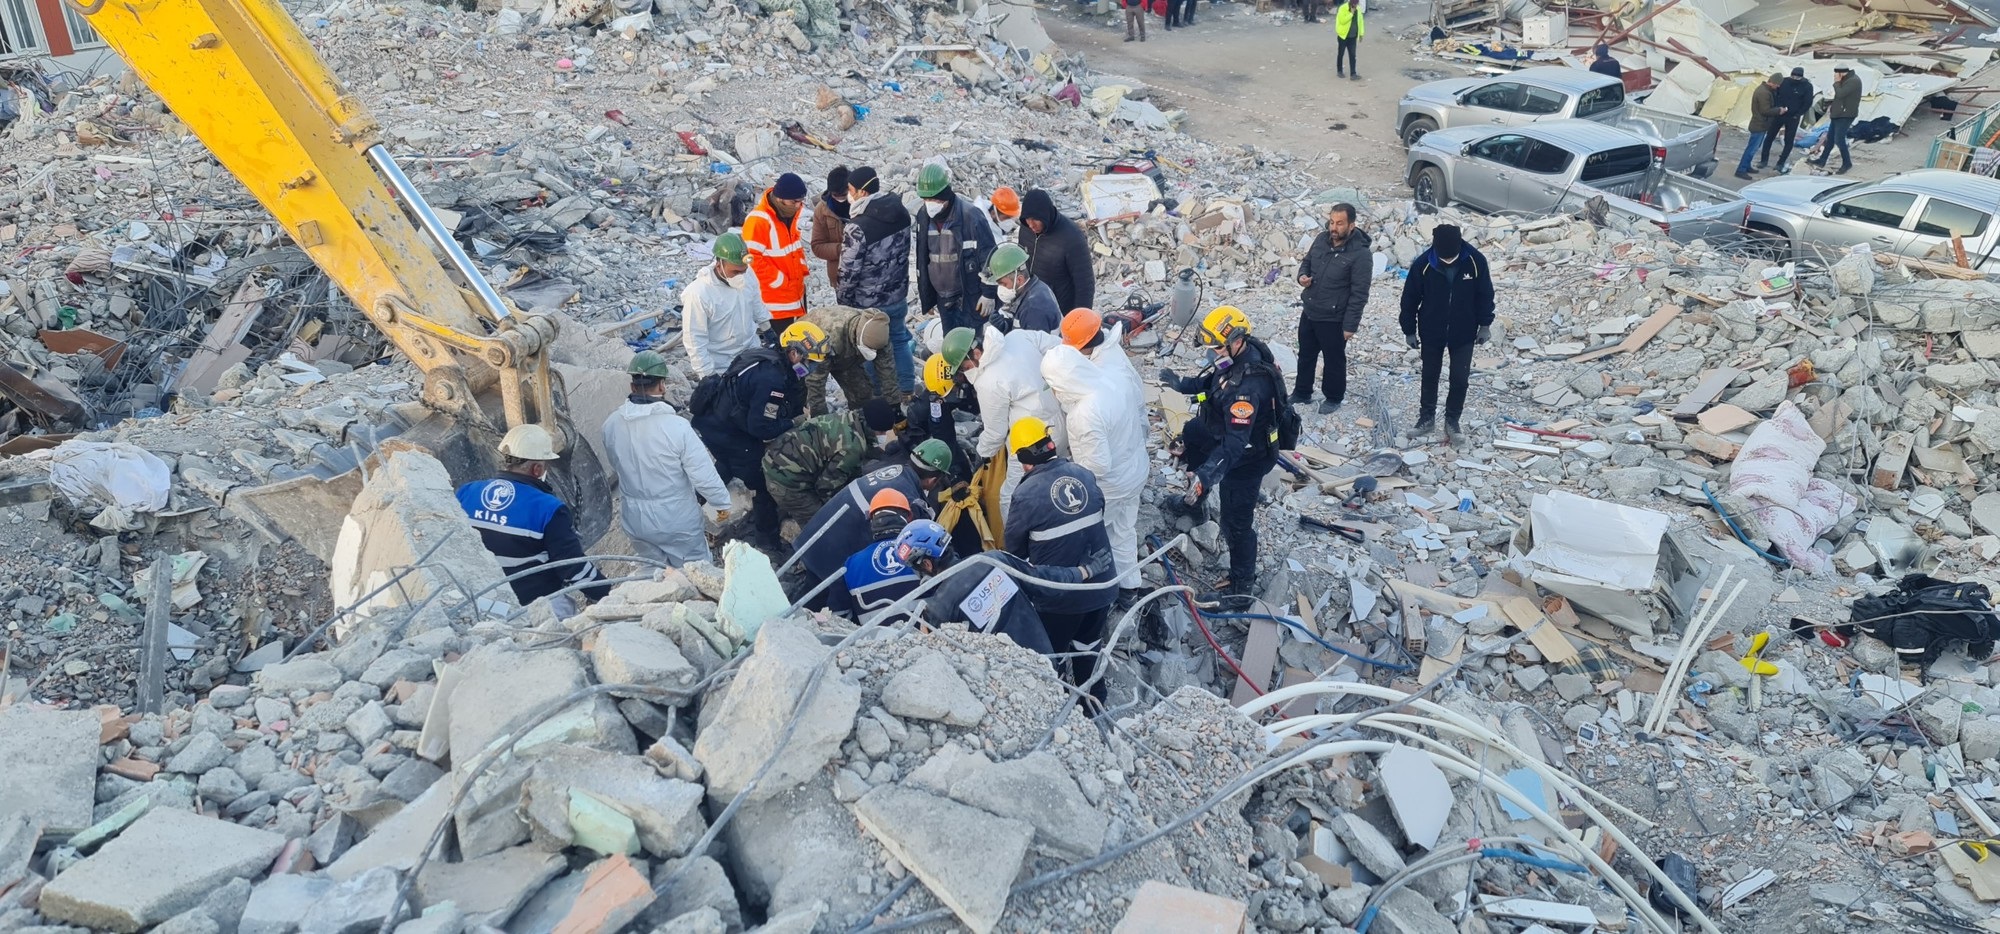 Tâm sự của đại úy công an tại hiện trường thảm họa động đất ở Thổ Nhĩ Kỳ - Ảnh 3